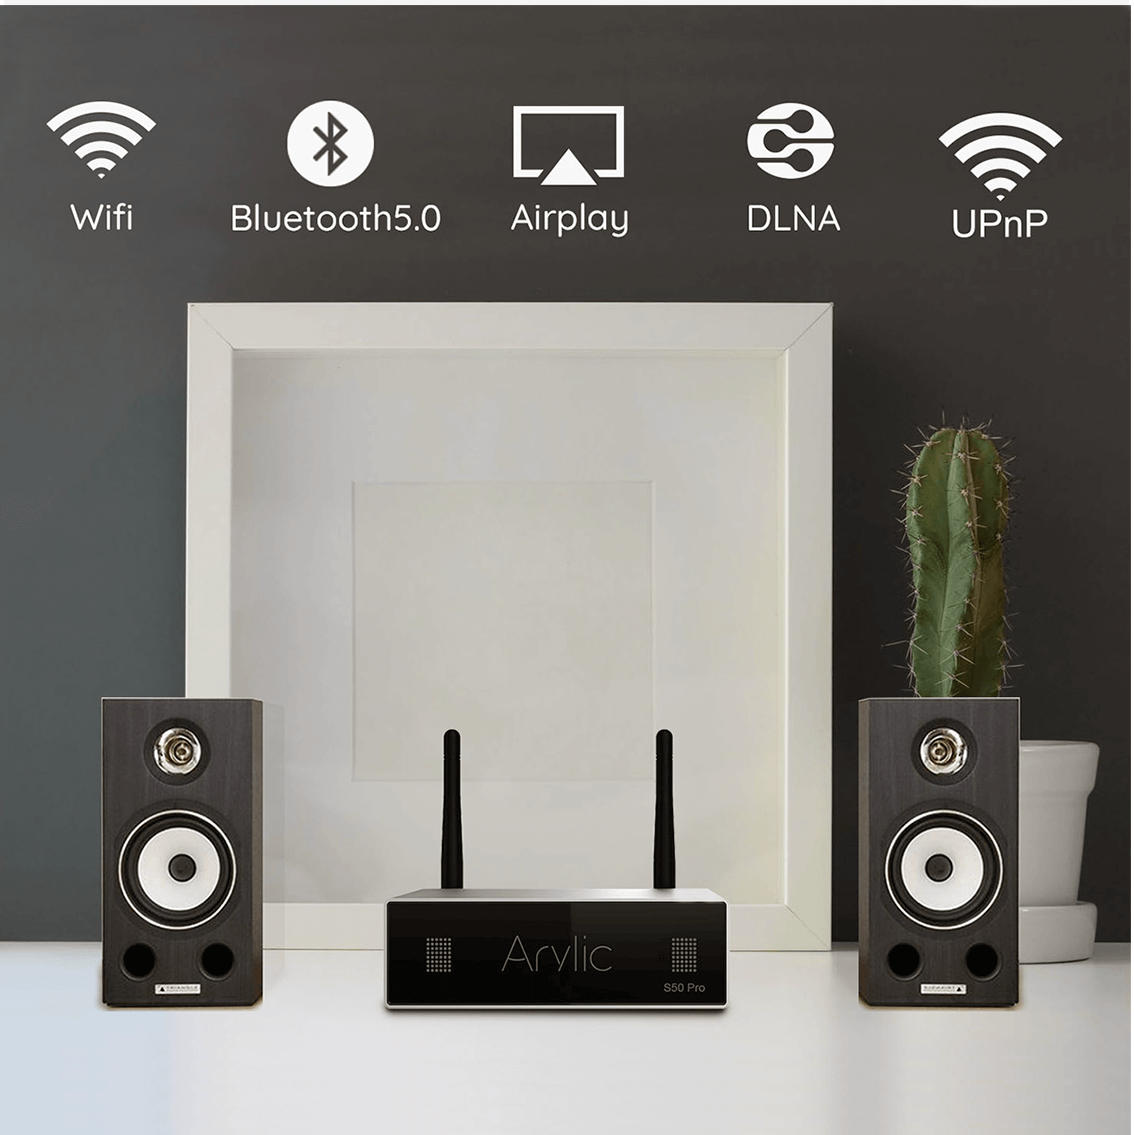 มุมมองเพิ่มเติมเกี่ยวกับ Arylic S50pro+ Music Streaming เสียงดีคุณภาพสูงรองรับการใช้งาน Music Streaming Hi-res Audio